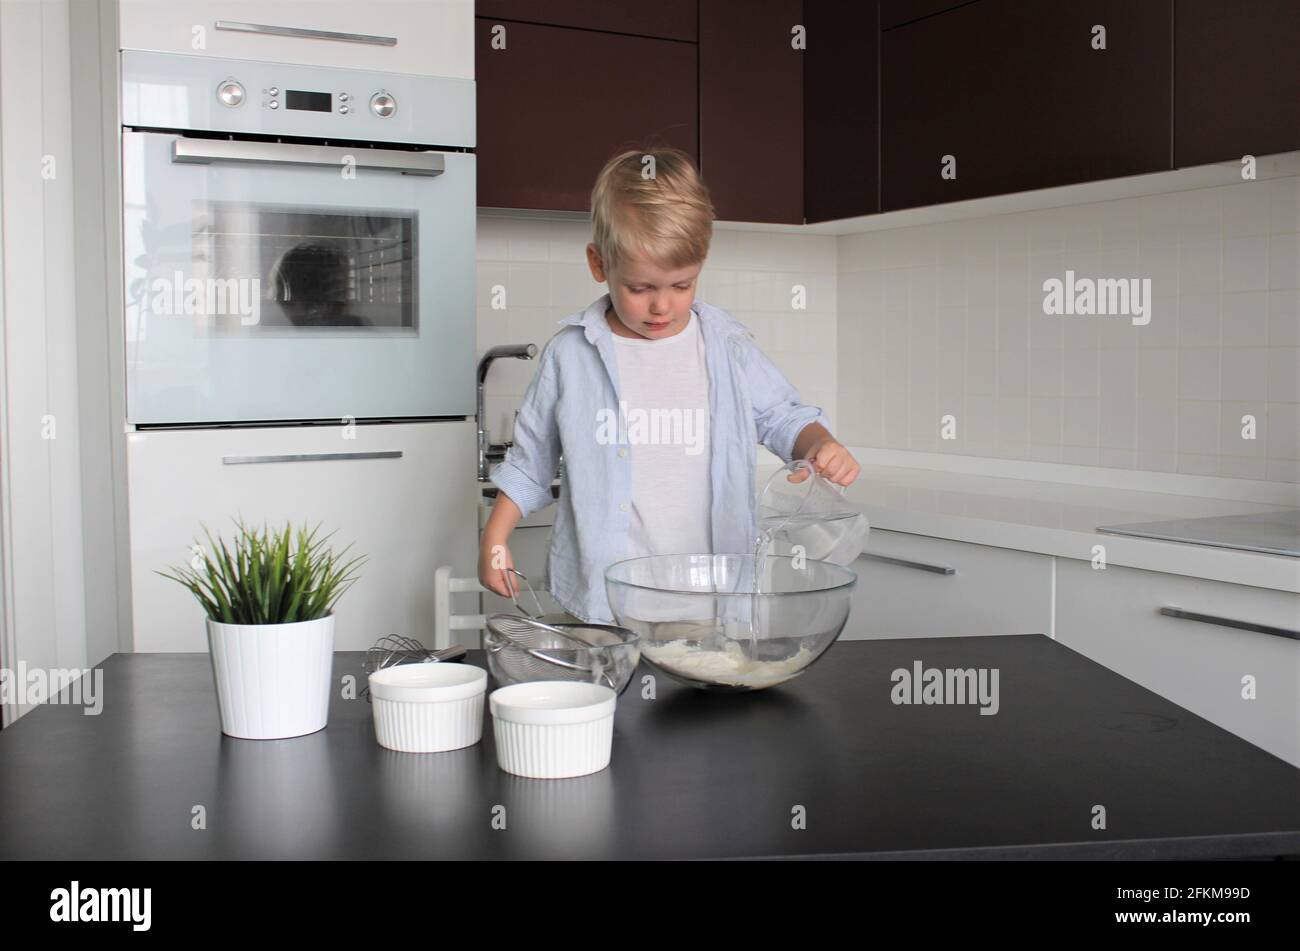 Un enfant de 3 ans cuisine dans la cuisine Banque D'Images